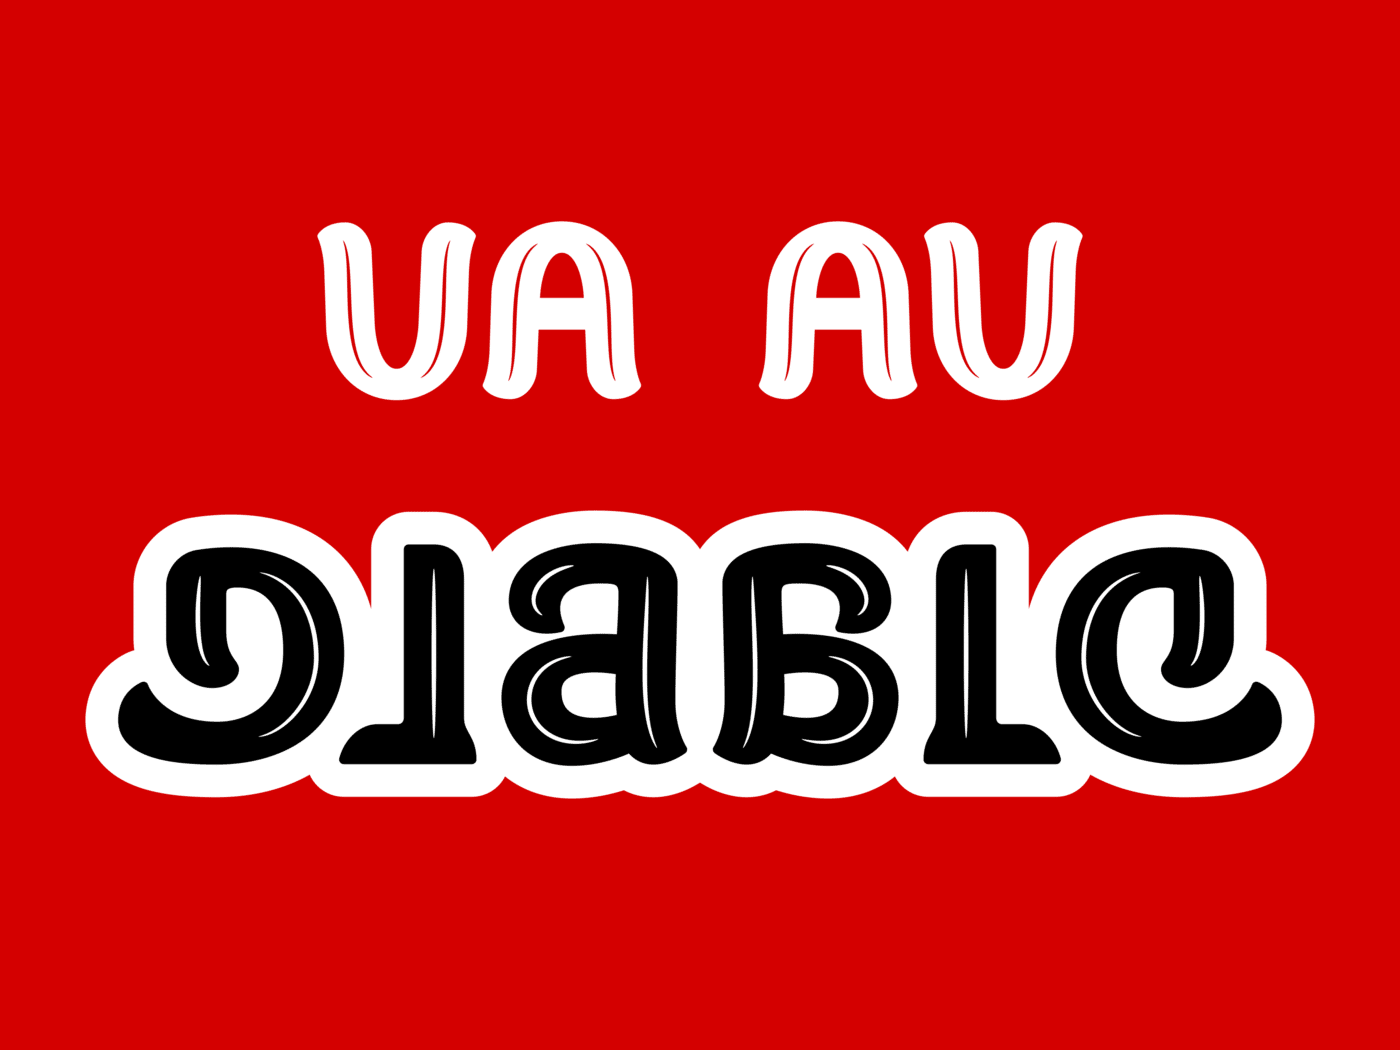 ambigramme Va au diable rouge